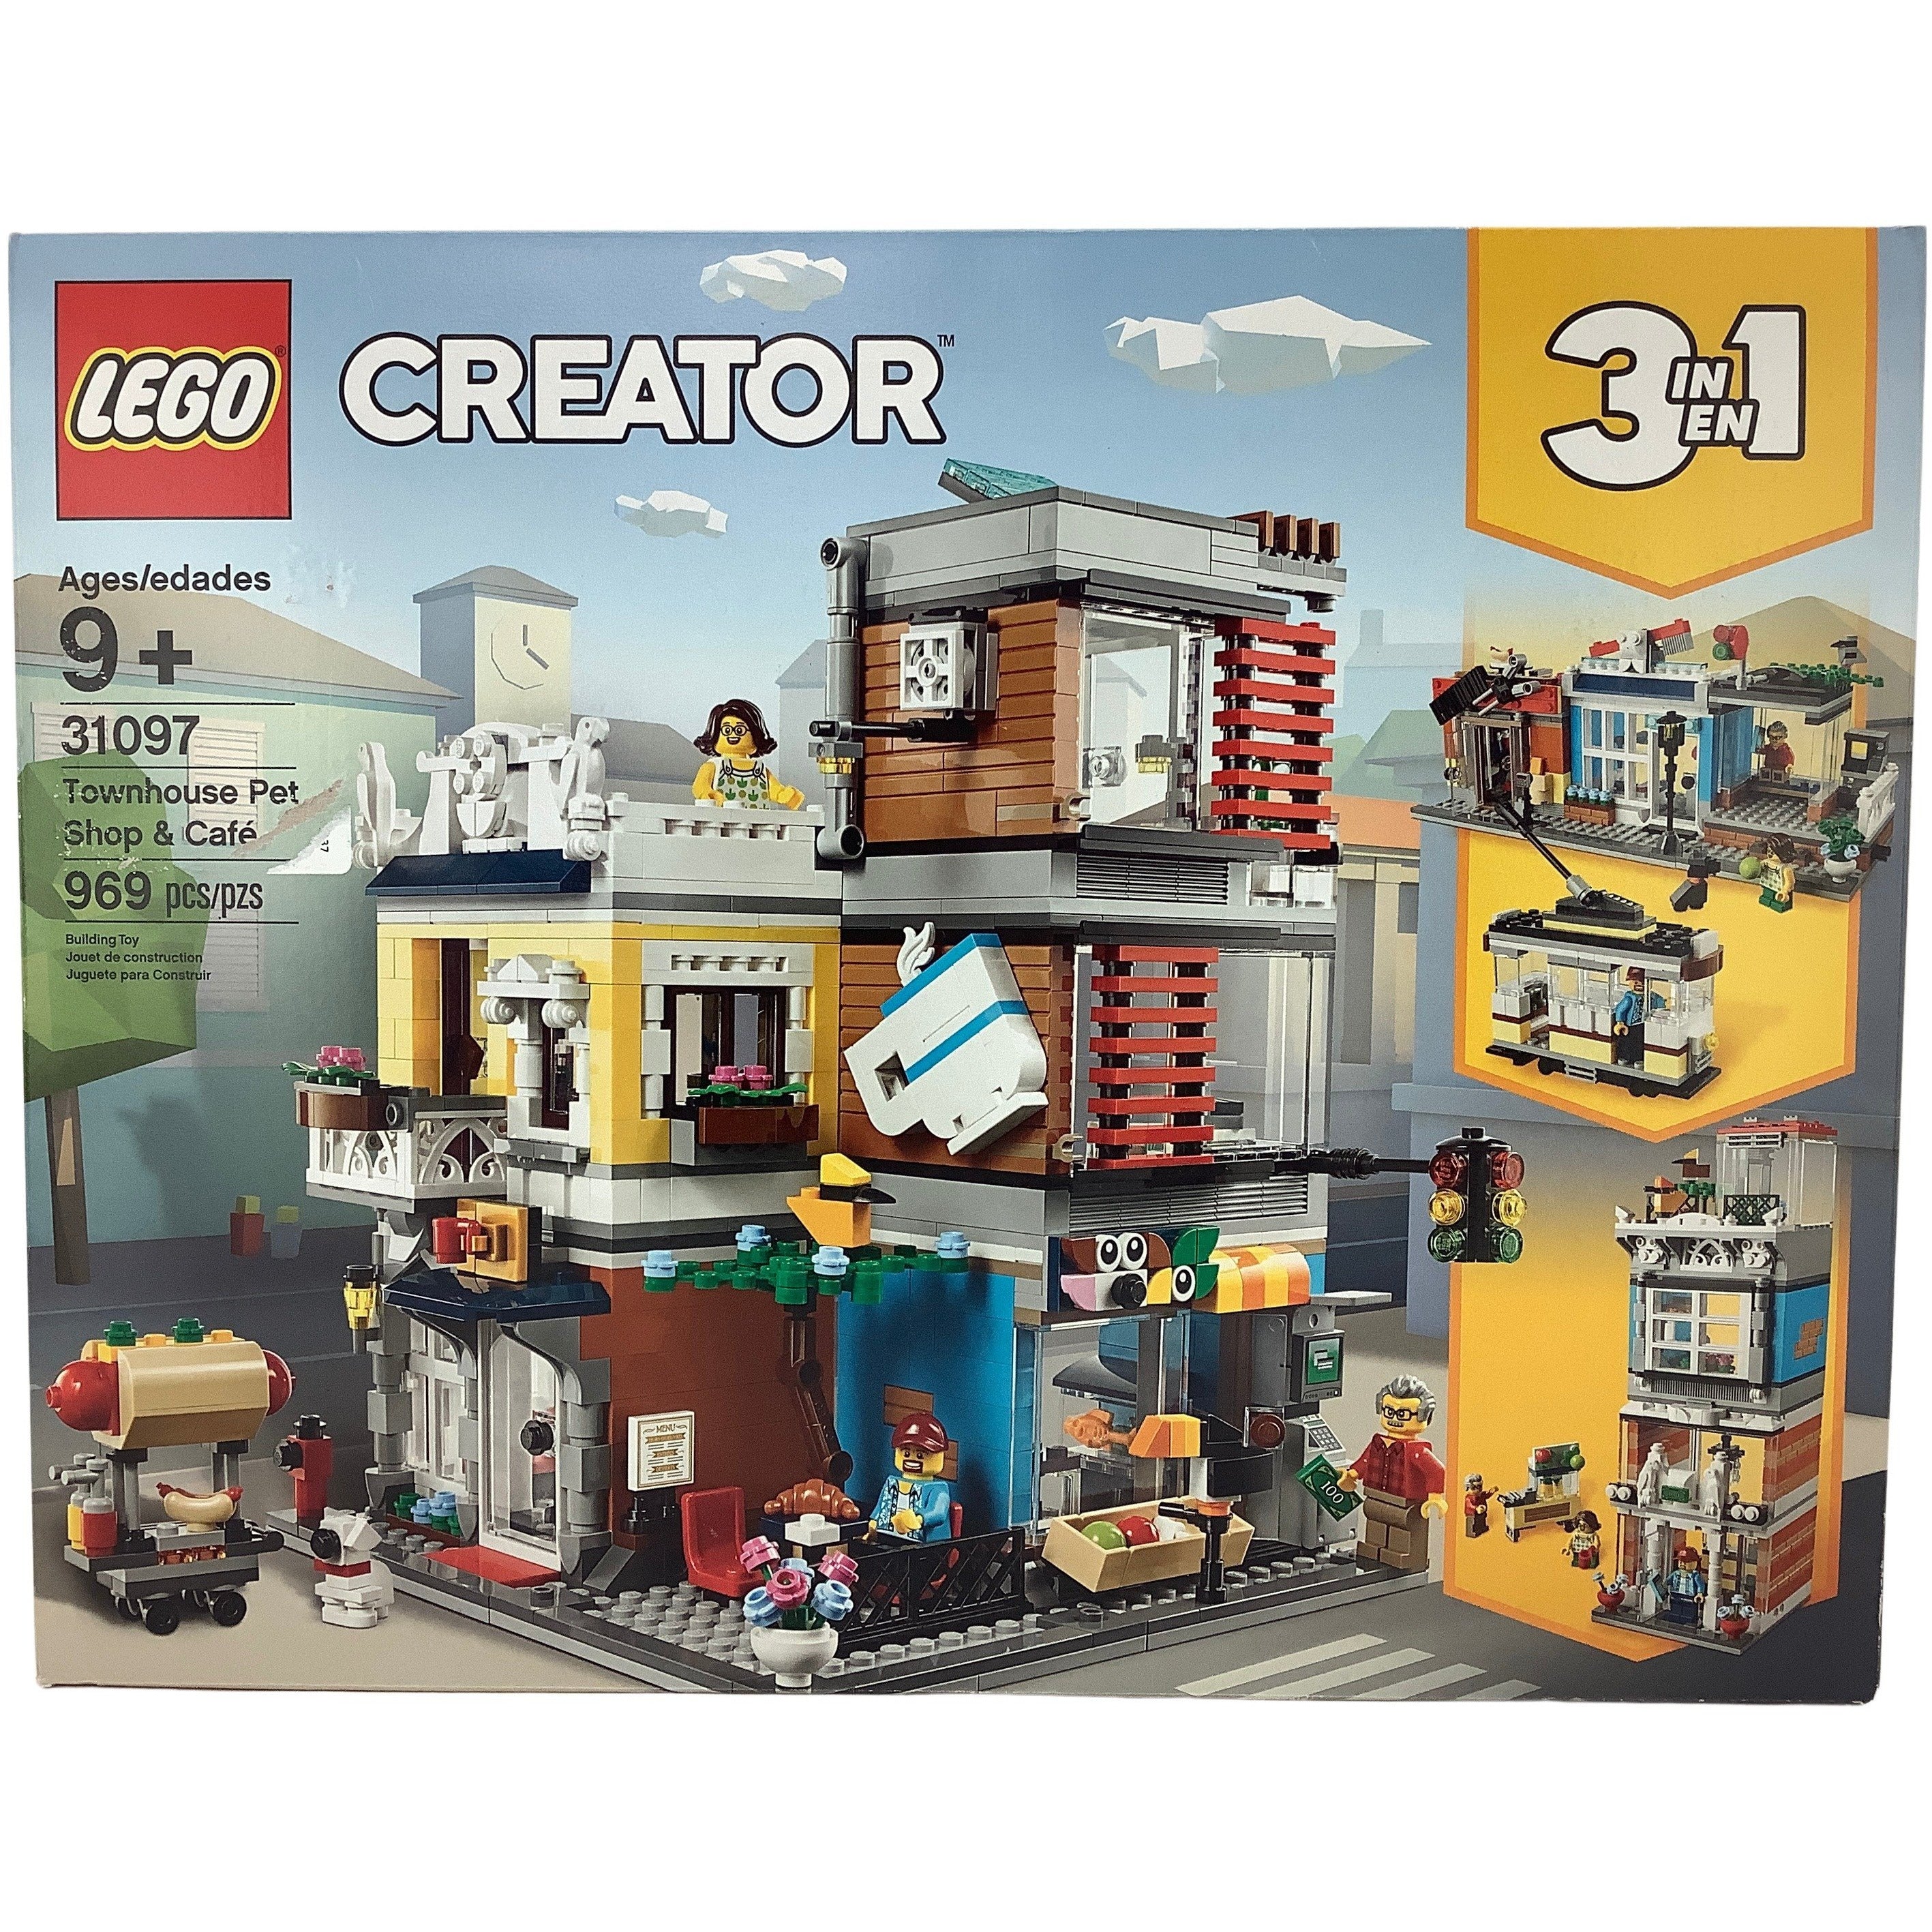 Lego Creator 3 in 1 Building Set: 31097 / 969 Pieces **DEALS**